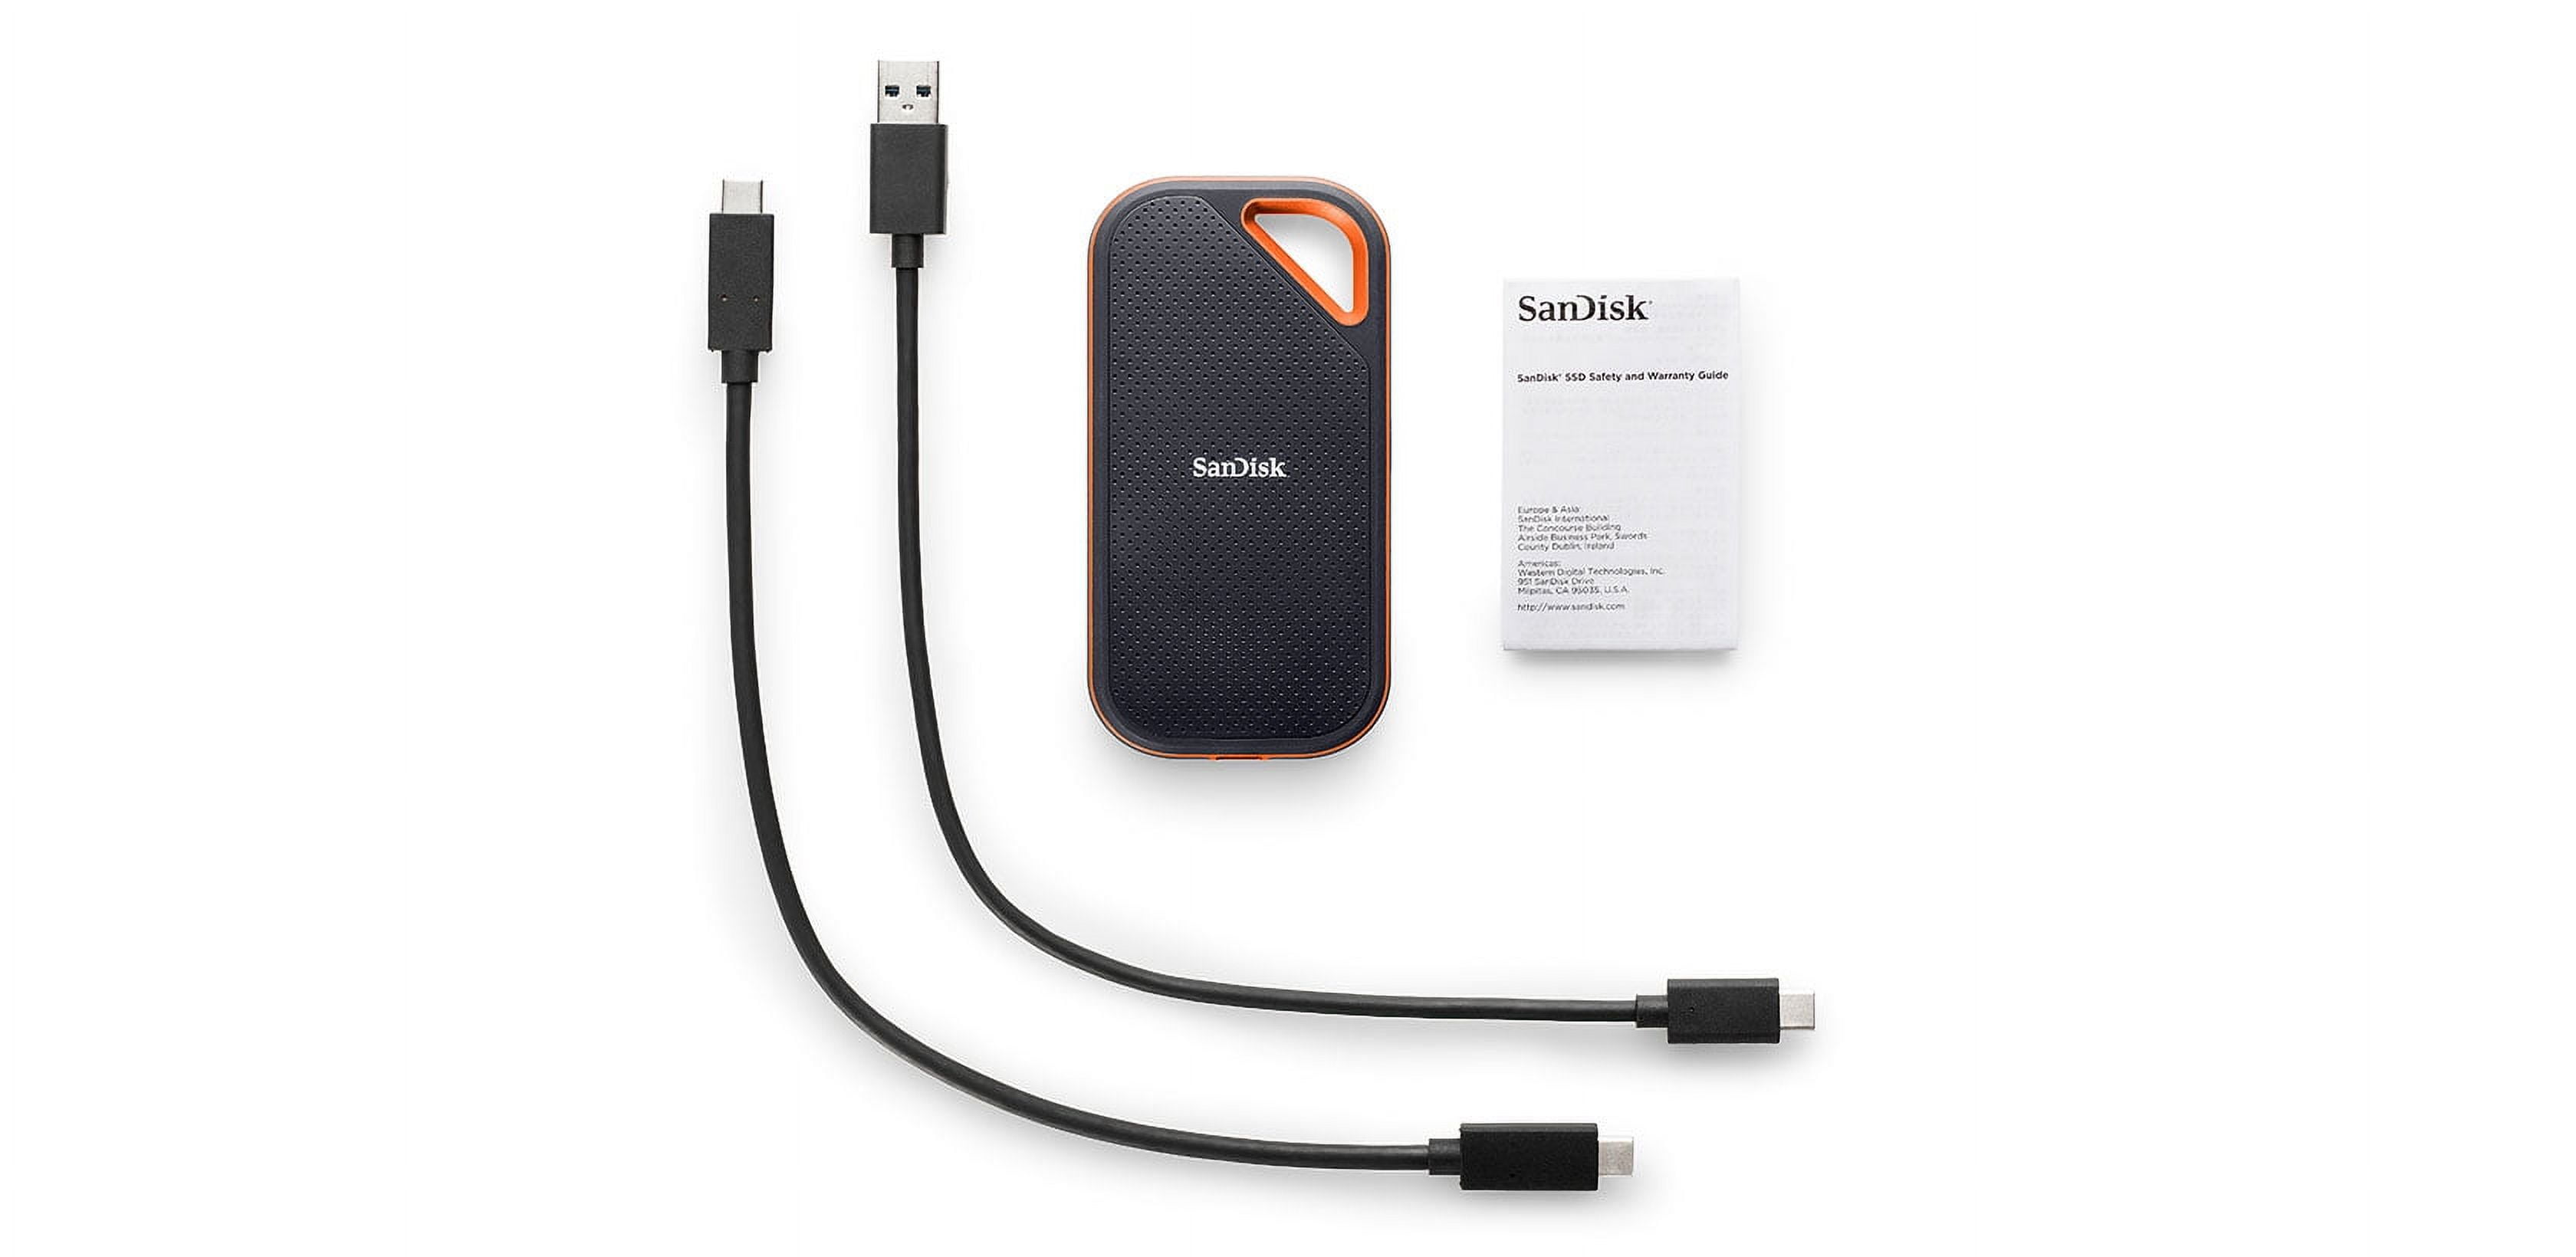 SanDisk 1TB Extreme Portable SSD V2 (Black) SDSSDE61-1T00-G25